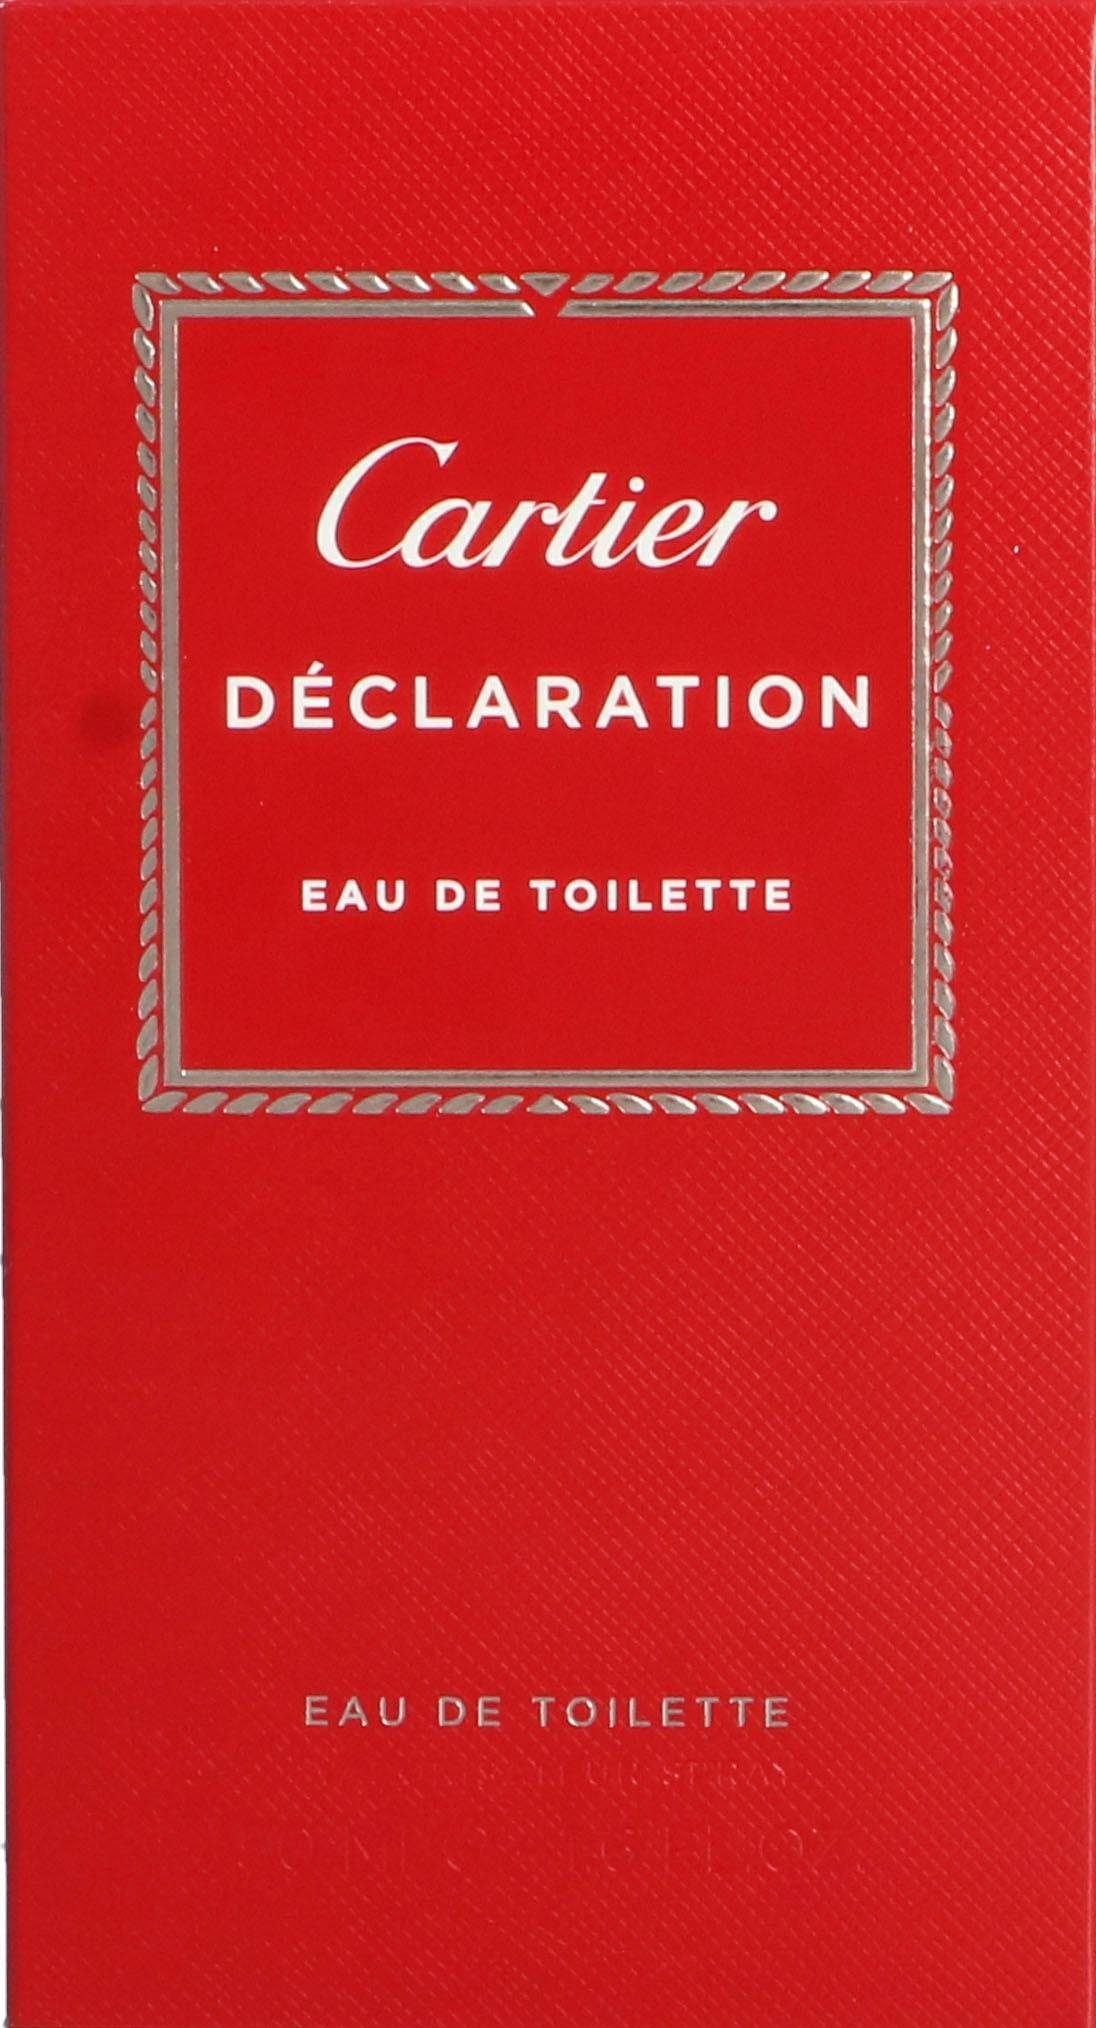 Cartier Eau de Declaration Toilette